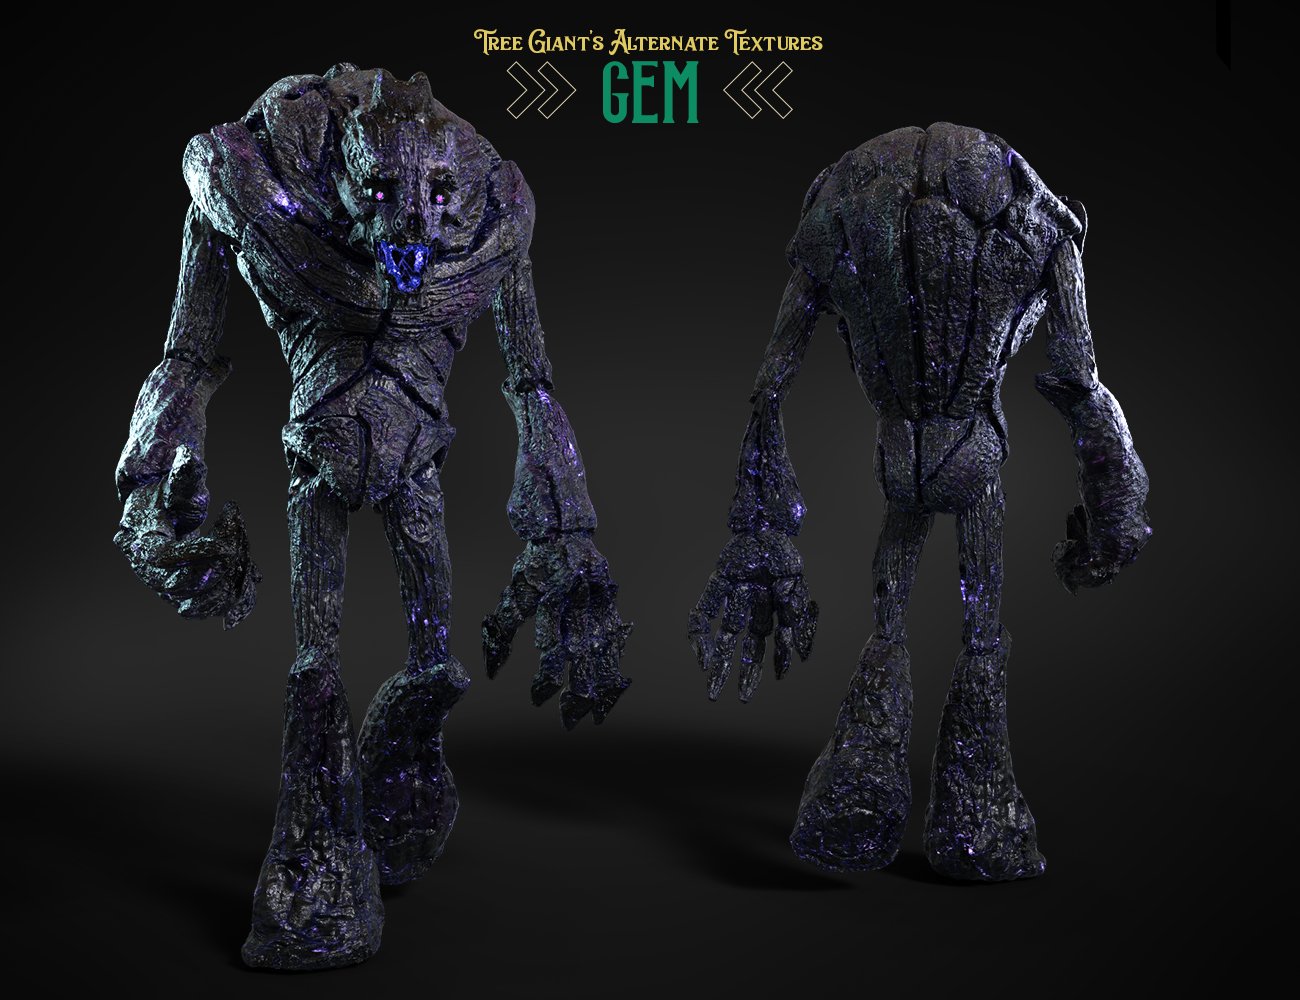 Tree Giant HD for Genesis 8.1 Males Alternate Textures by: FenixPhoenixEsid, 3D Models by Daz 3D